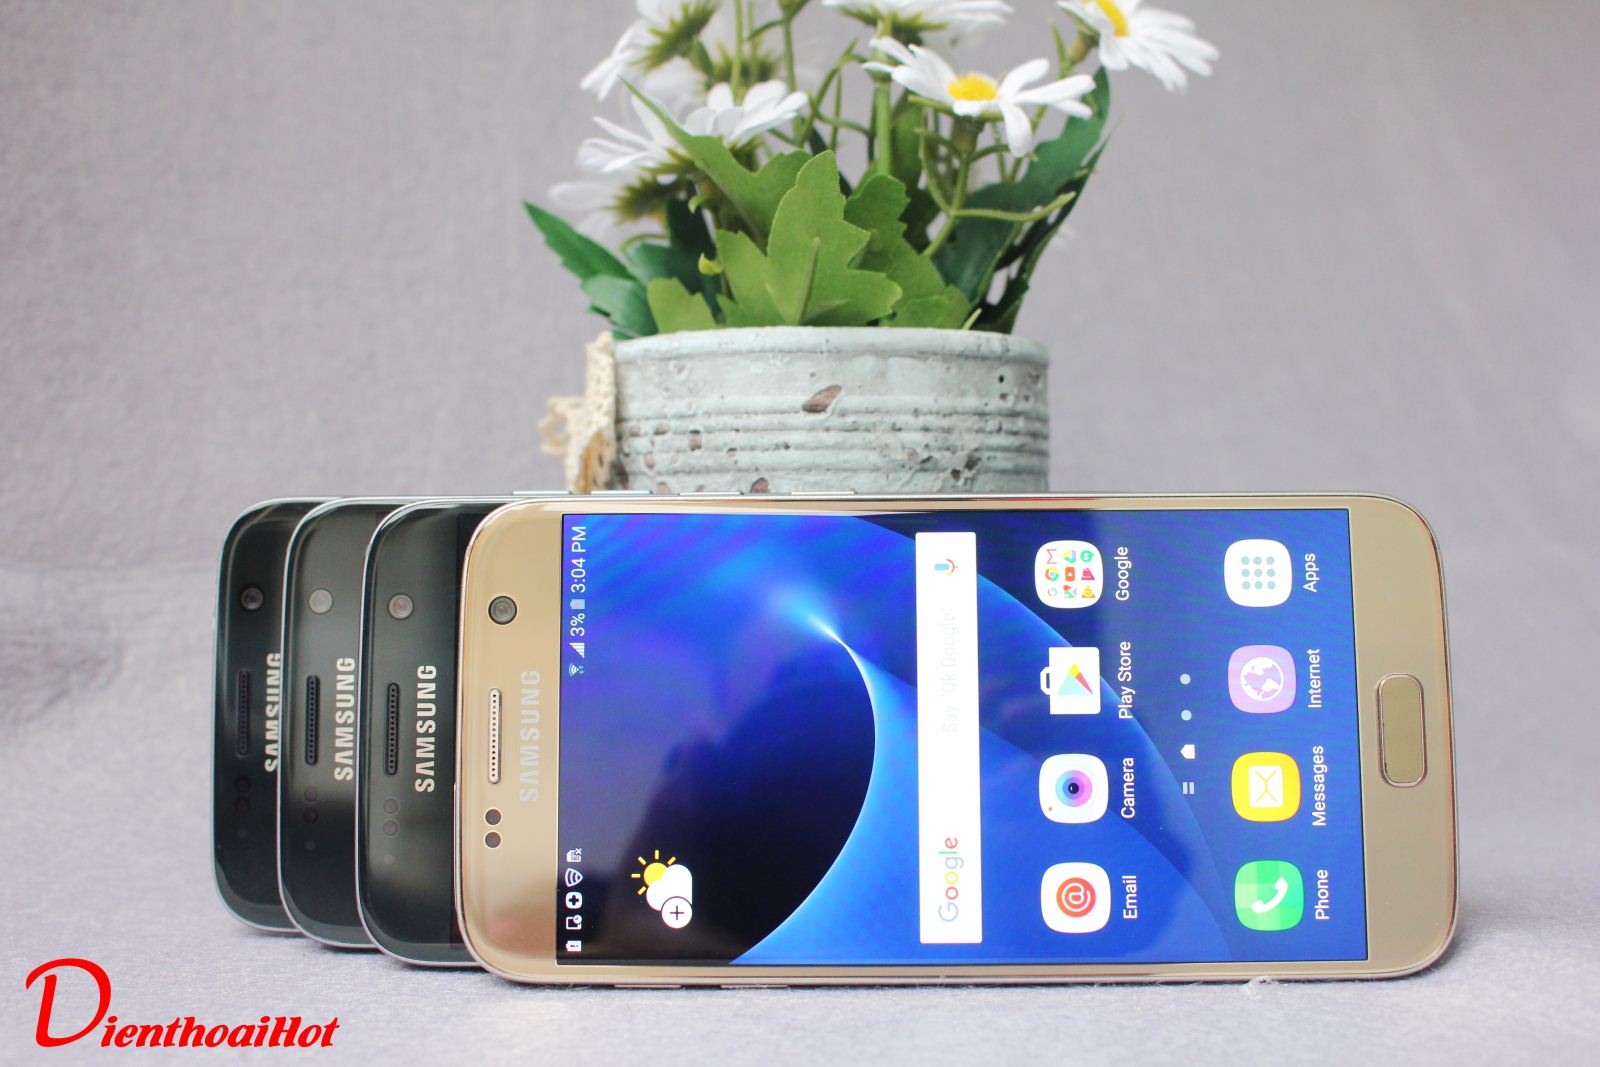 Samsung Galaxy S7 Xách Tay thị trường Mỹ